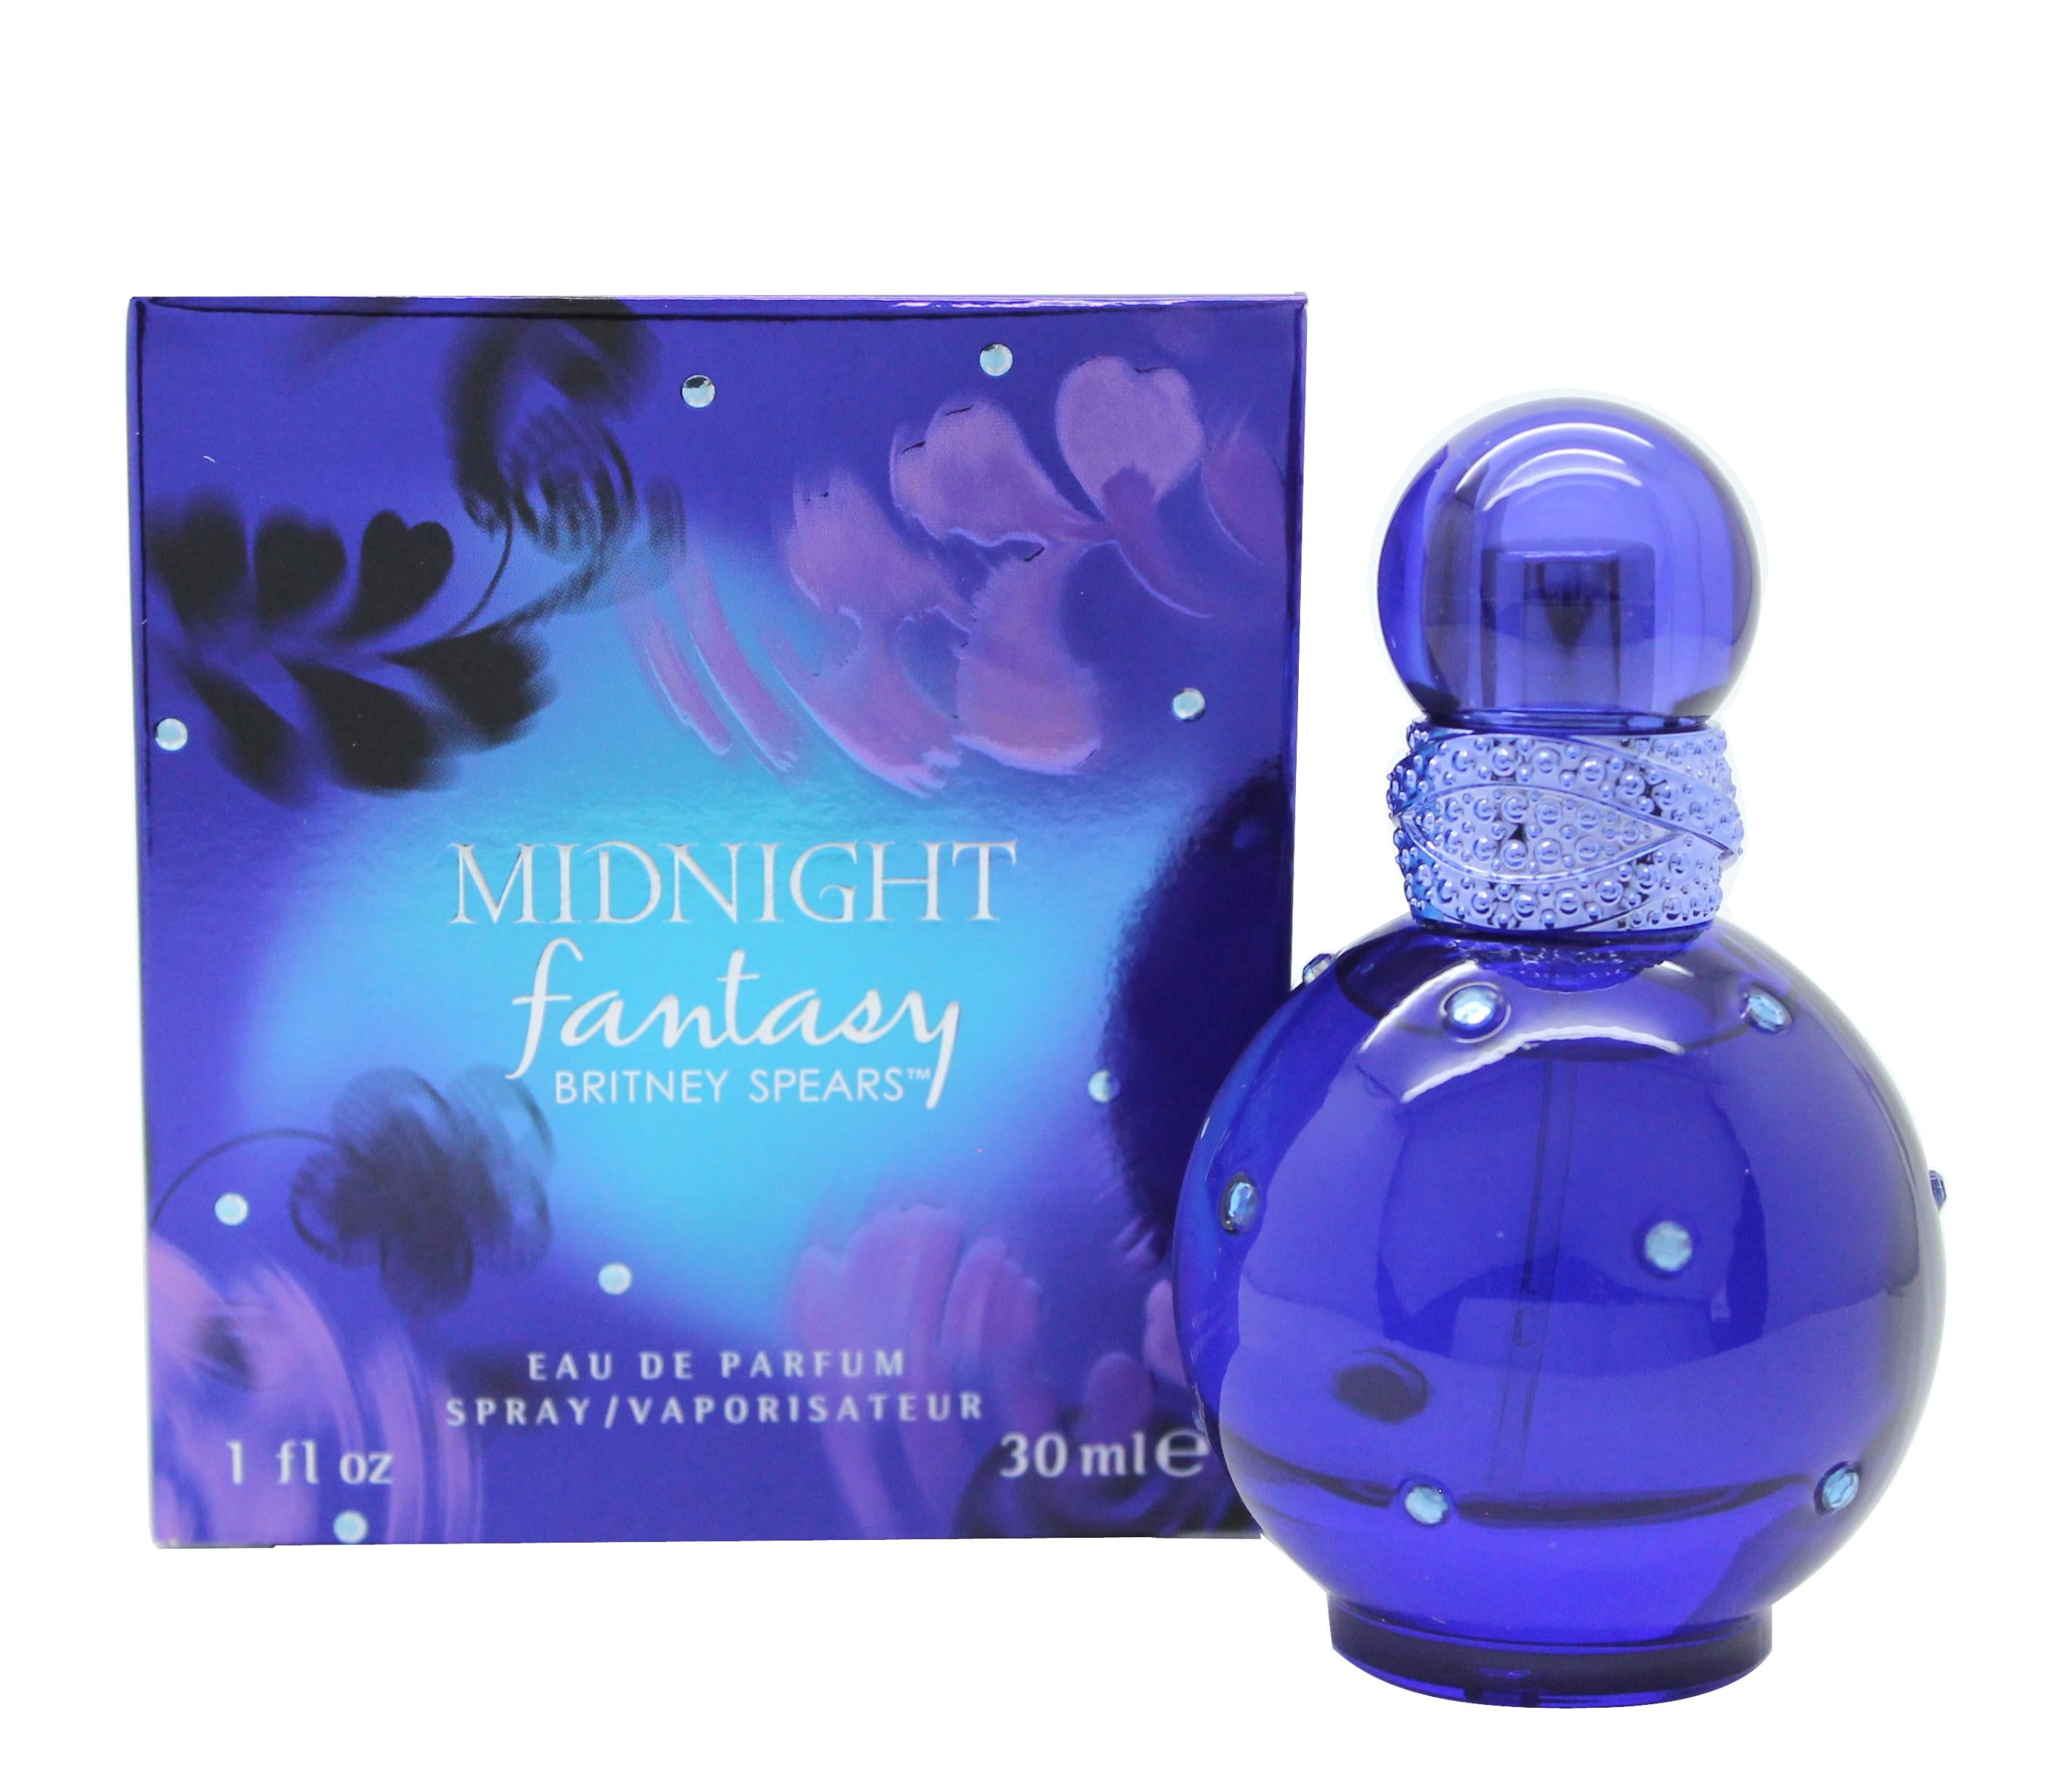 View Britney Spears Midnight Fantasy Eau de Parfum 30ml Spray information